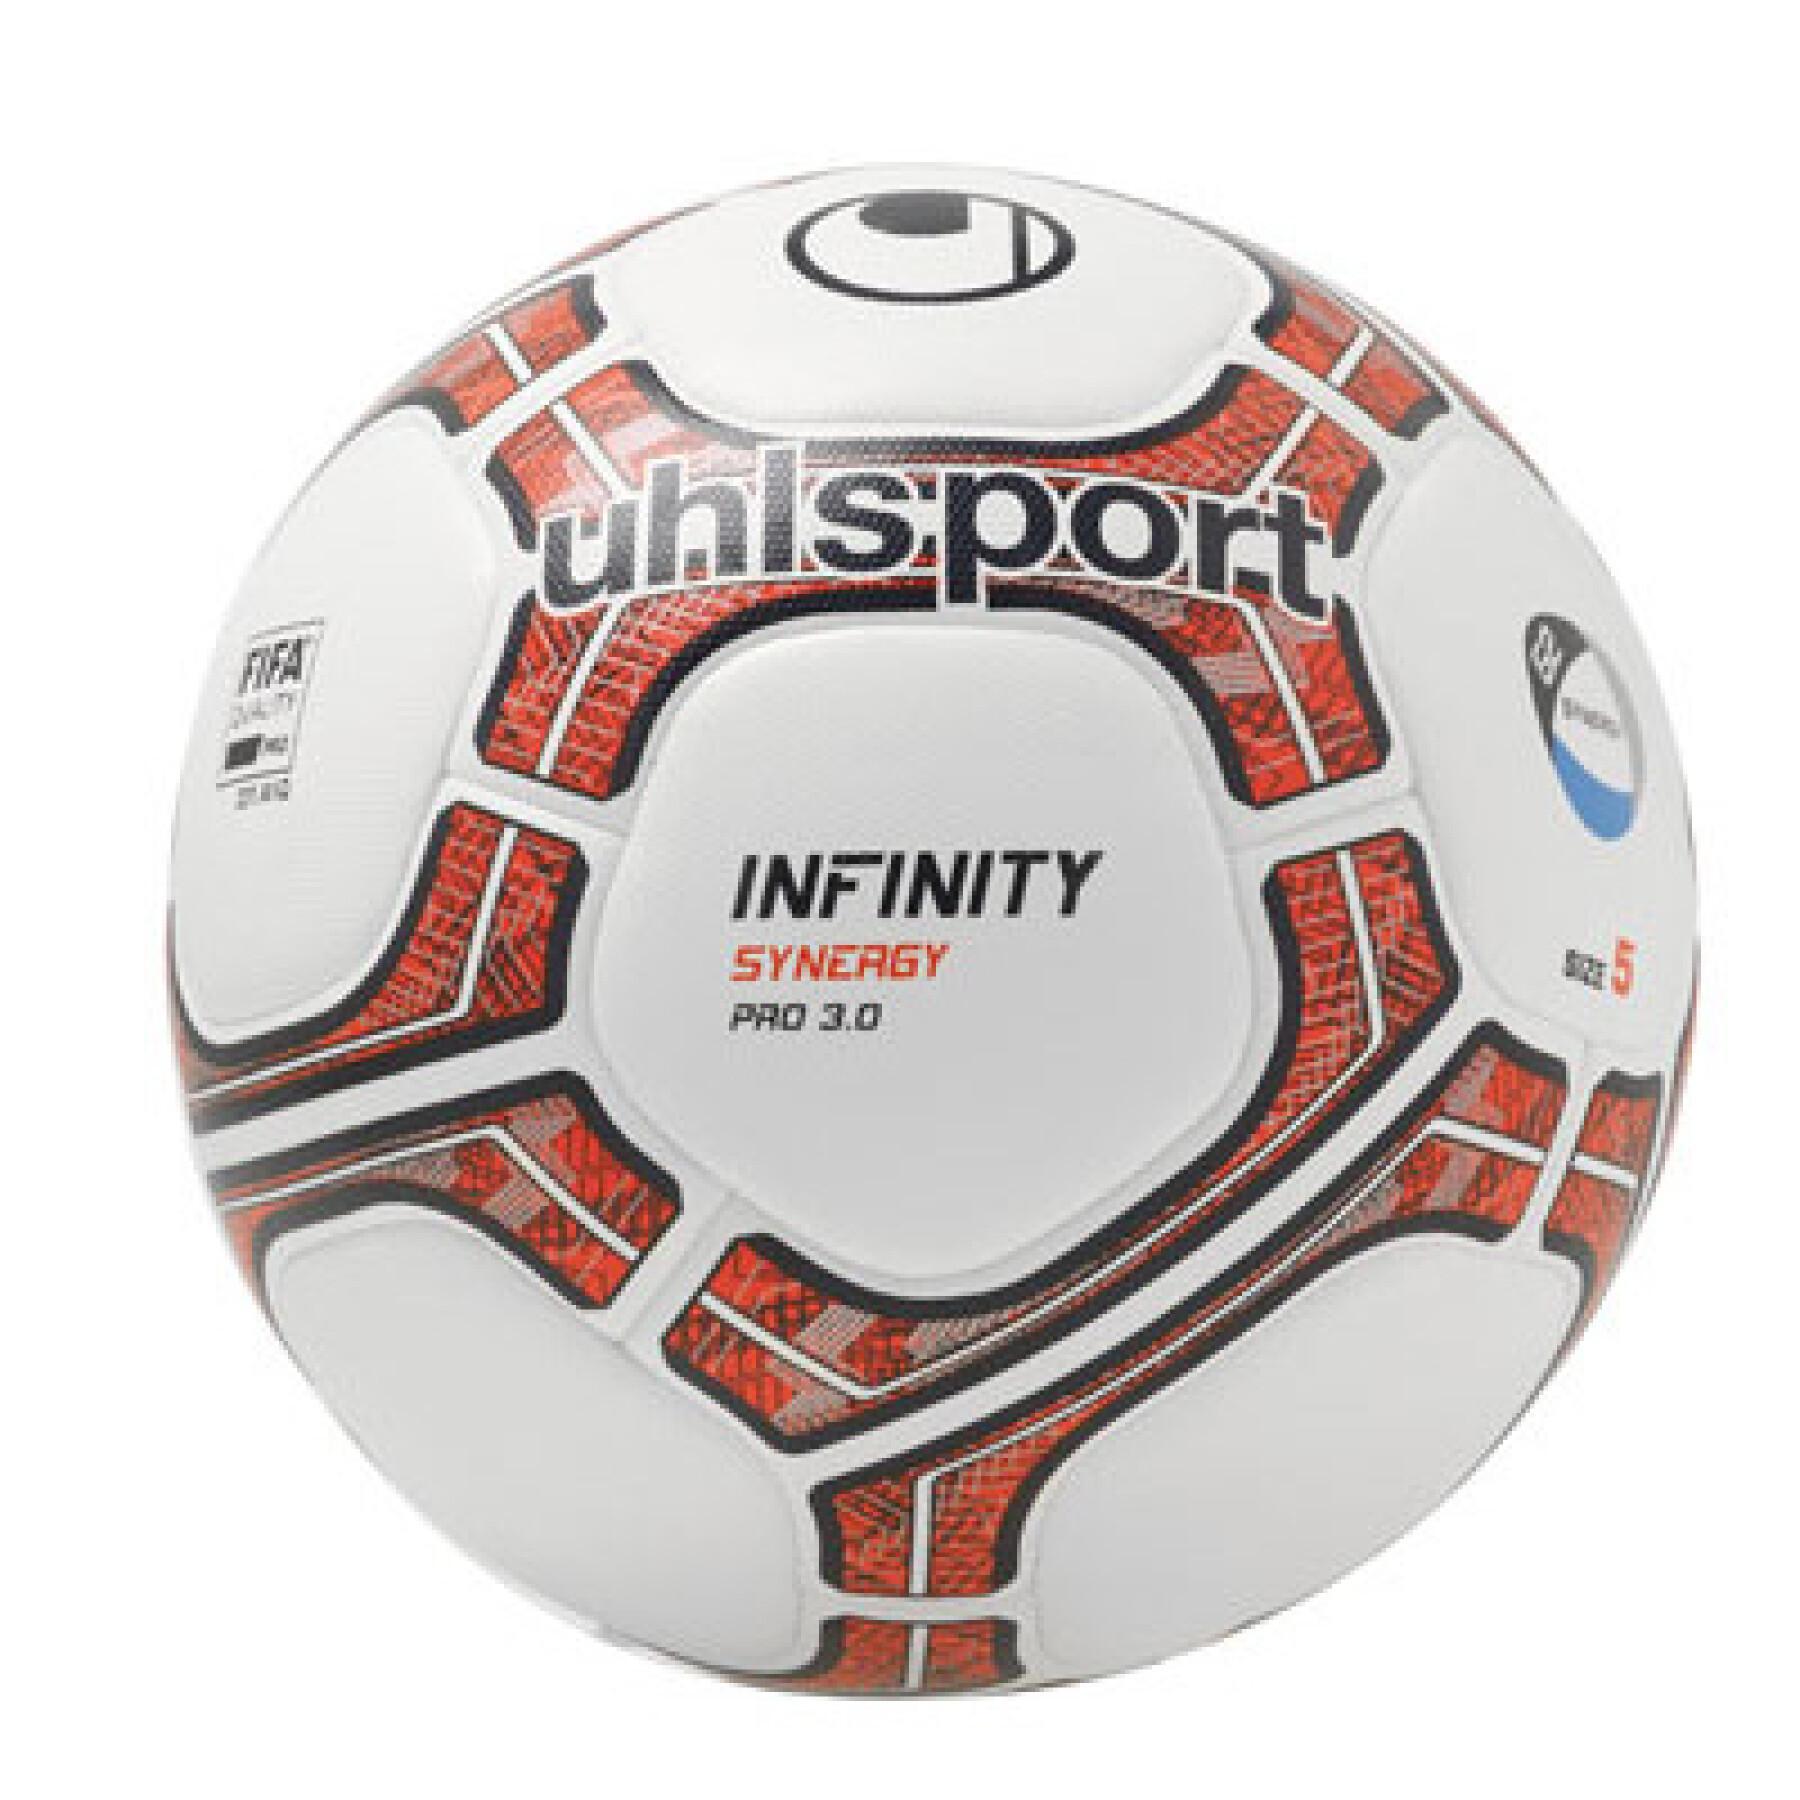 Ballong Uhlsport Infinity Synergy G2 Pro 3.0